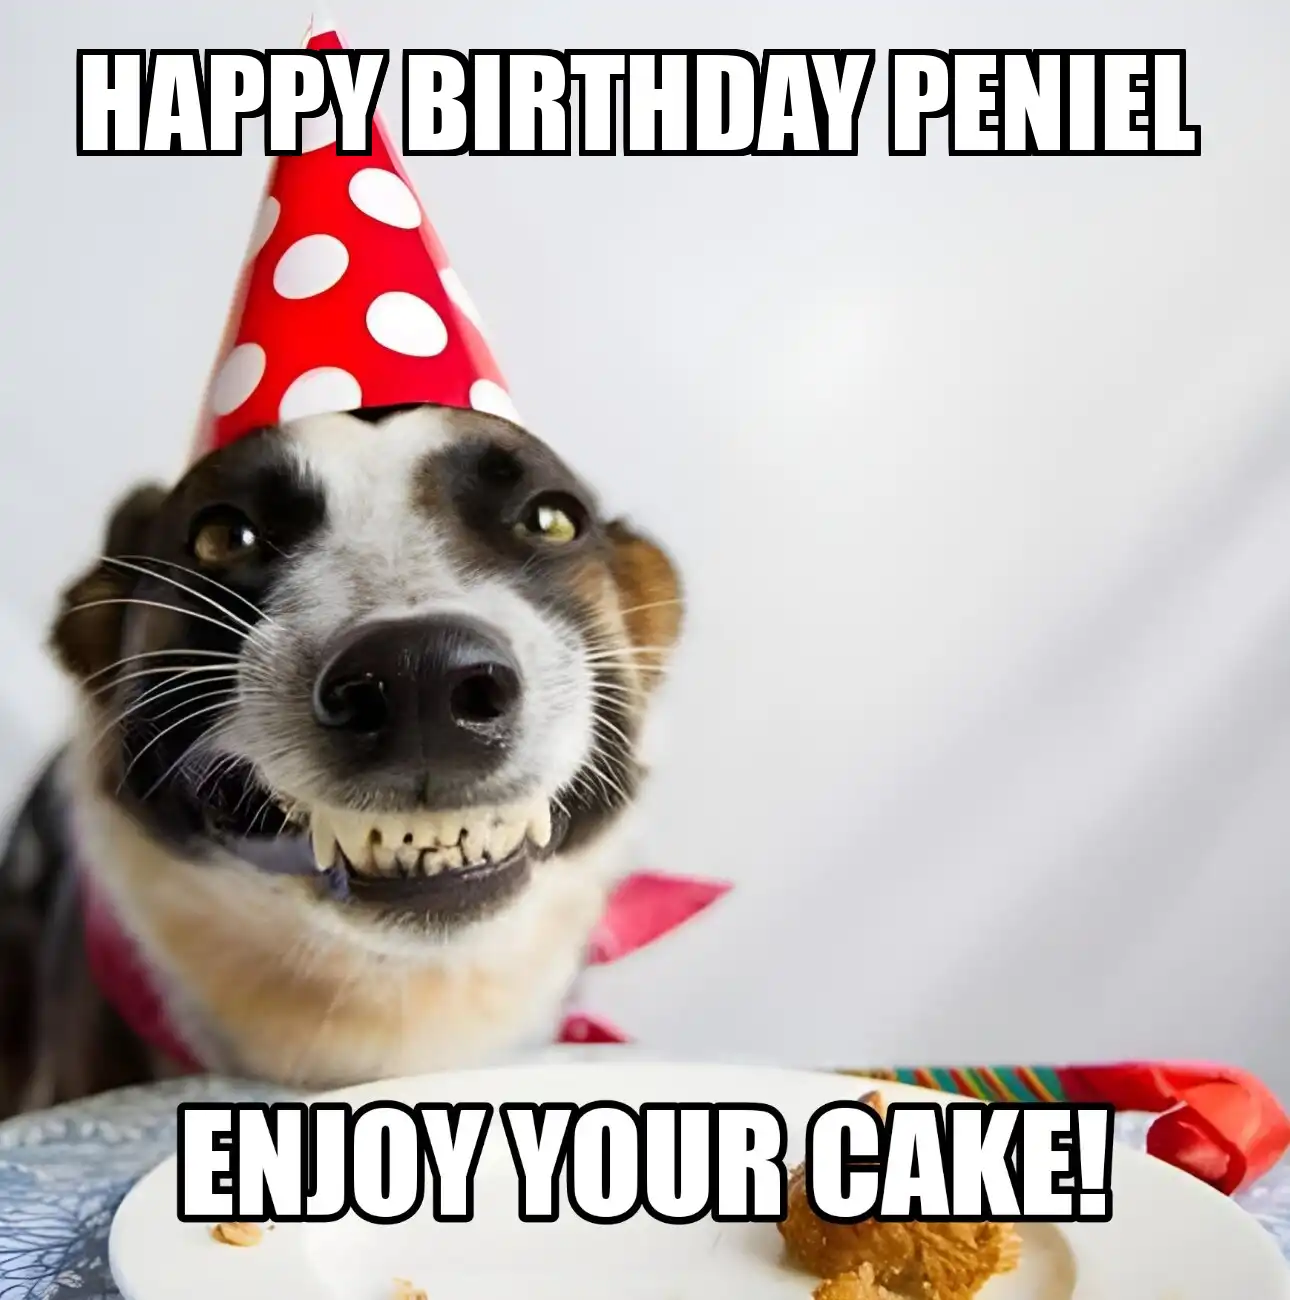 Happy Birthday Peniel Enjoy Your Cake Dog Meme